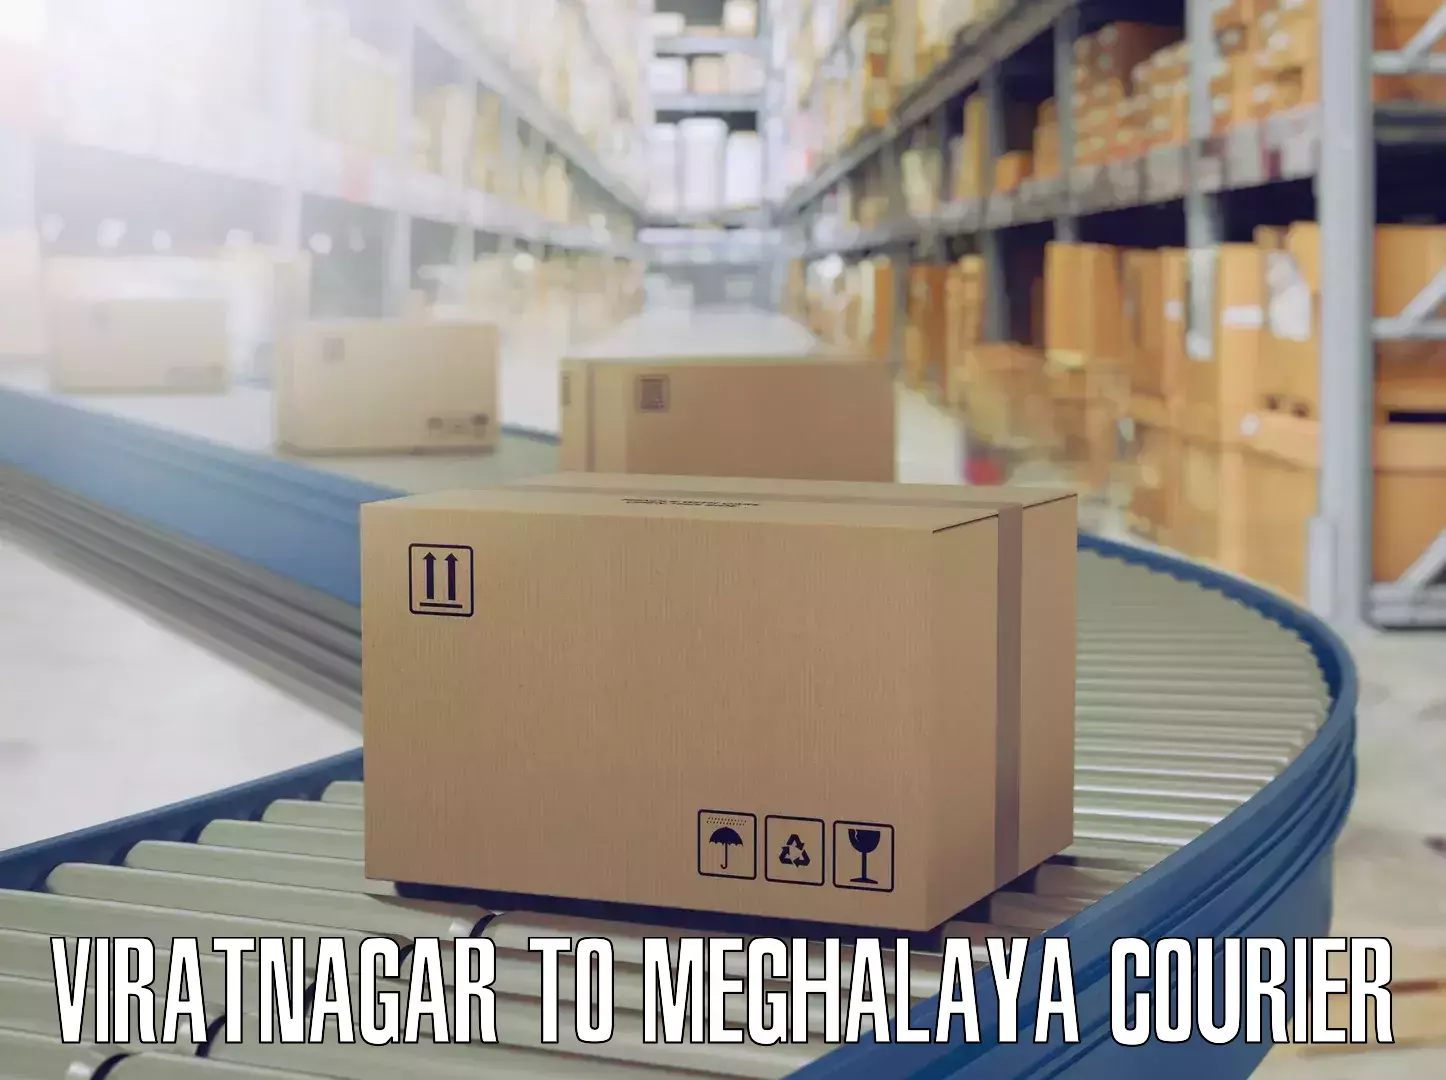 Furniture transport solutions Viratnagar to Meghalaya